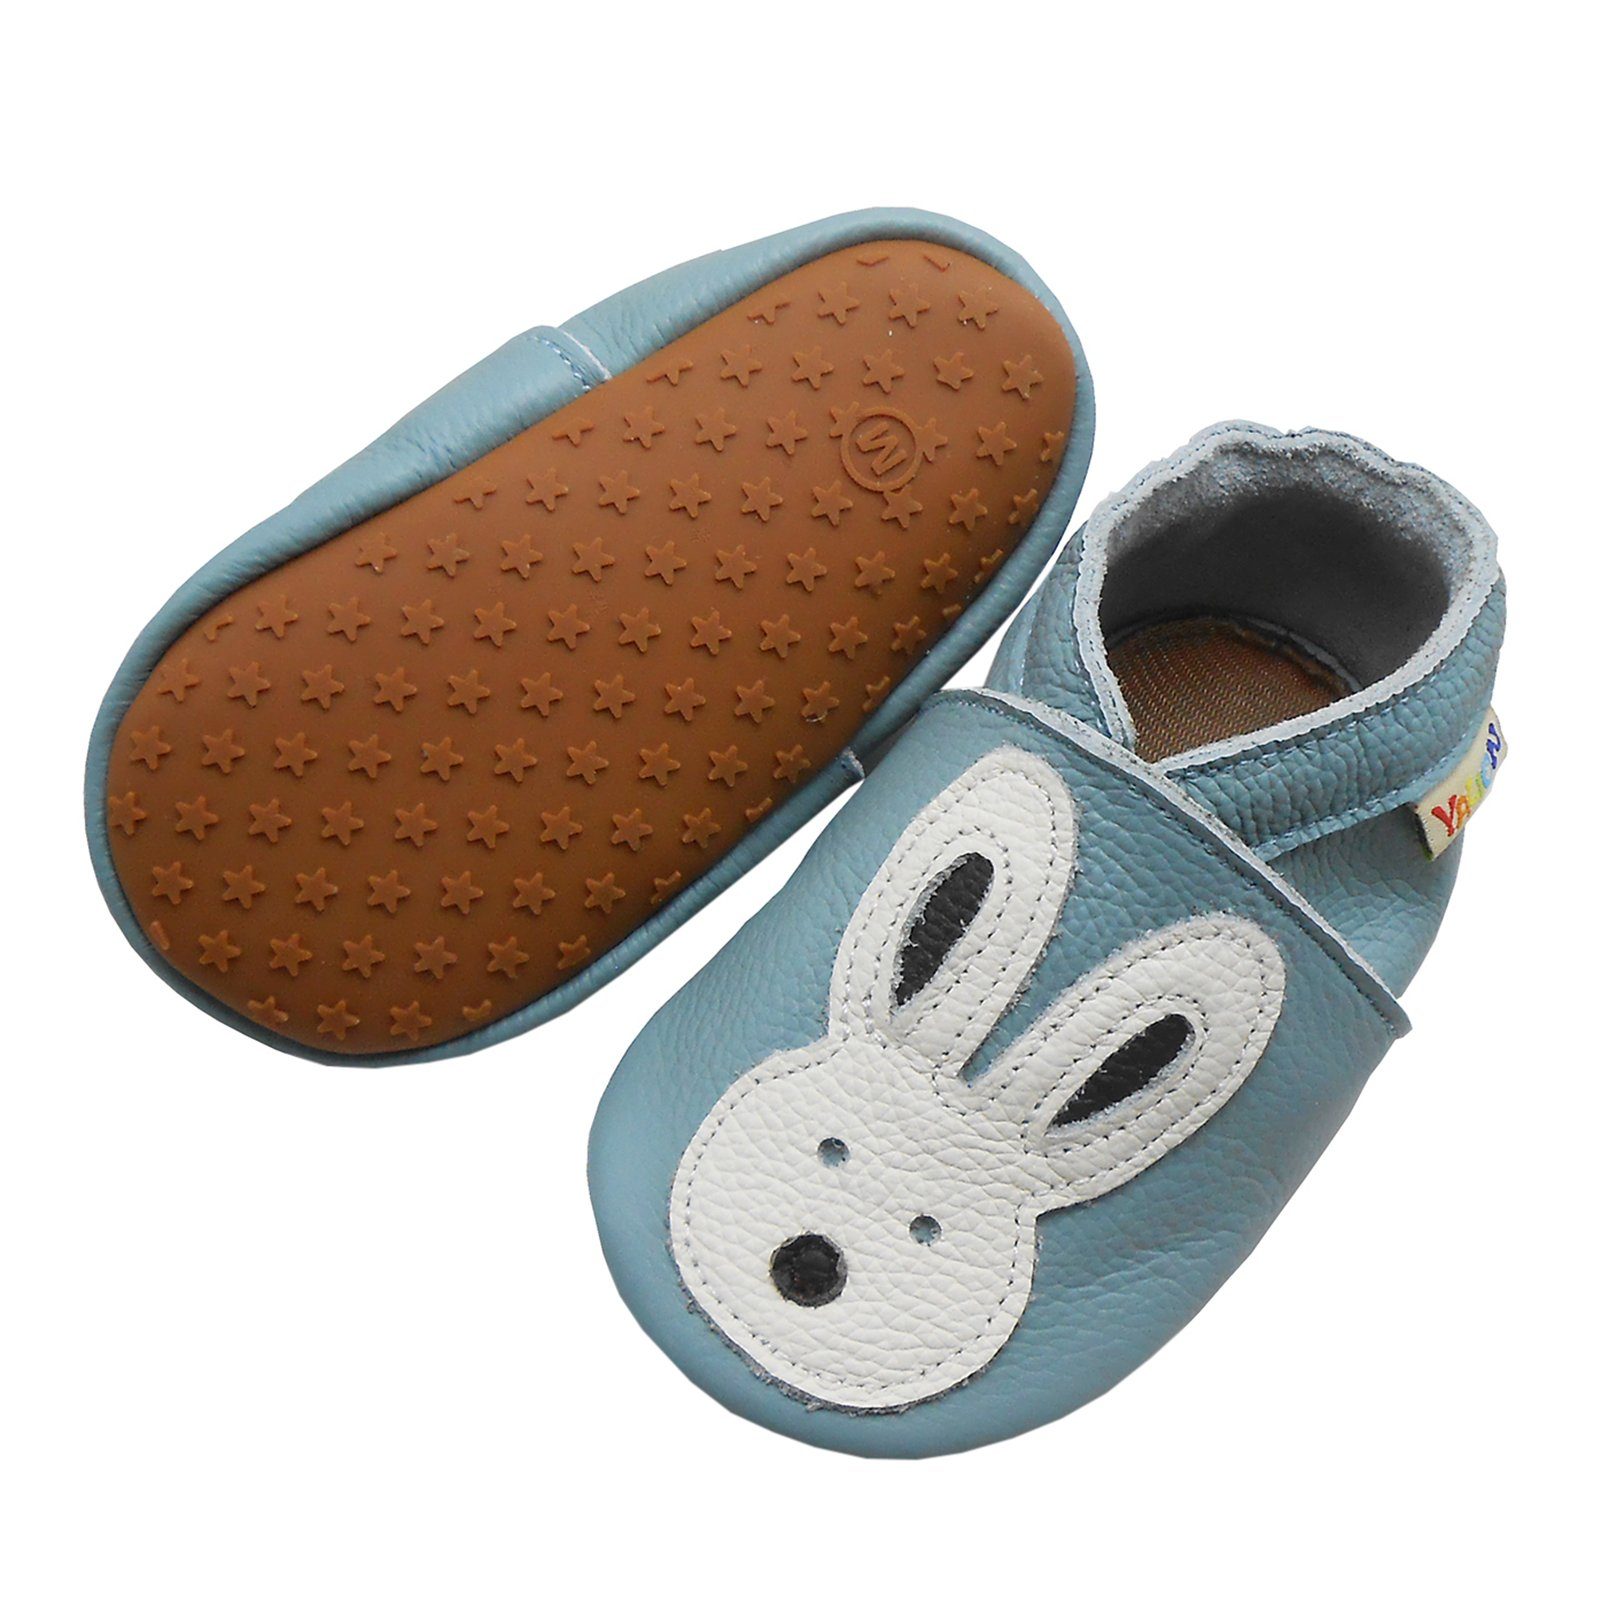 Yalion »Weiche Leder Lauflernschuhe Hausschuhe Lederpuschen Kaninchen blau  100% Leder« Krabbelschuh online kaufen | OTTO